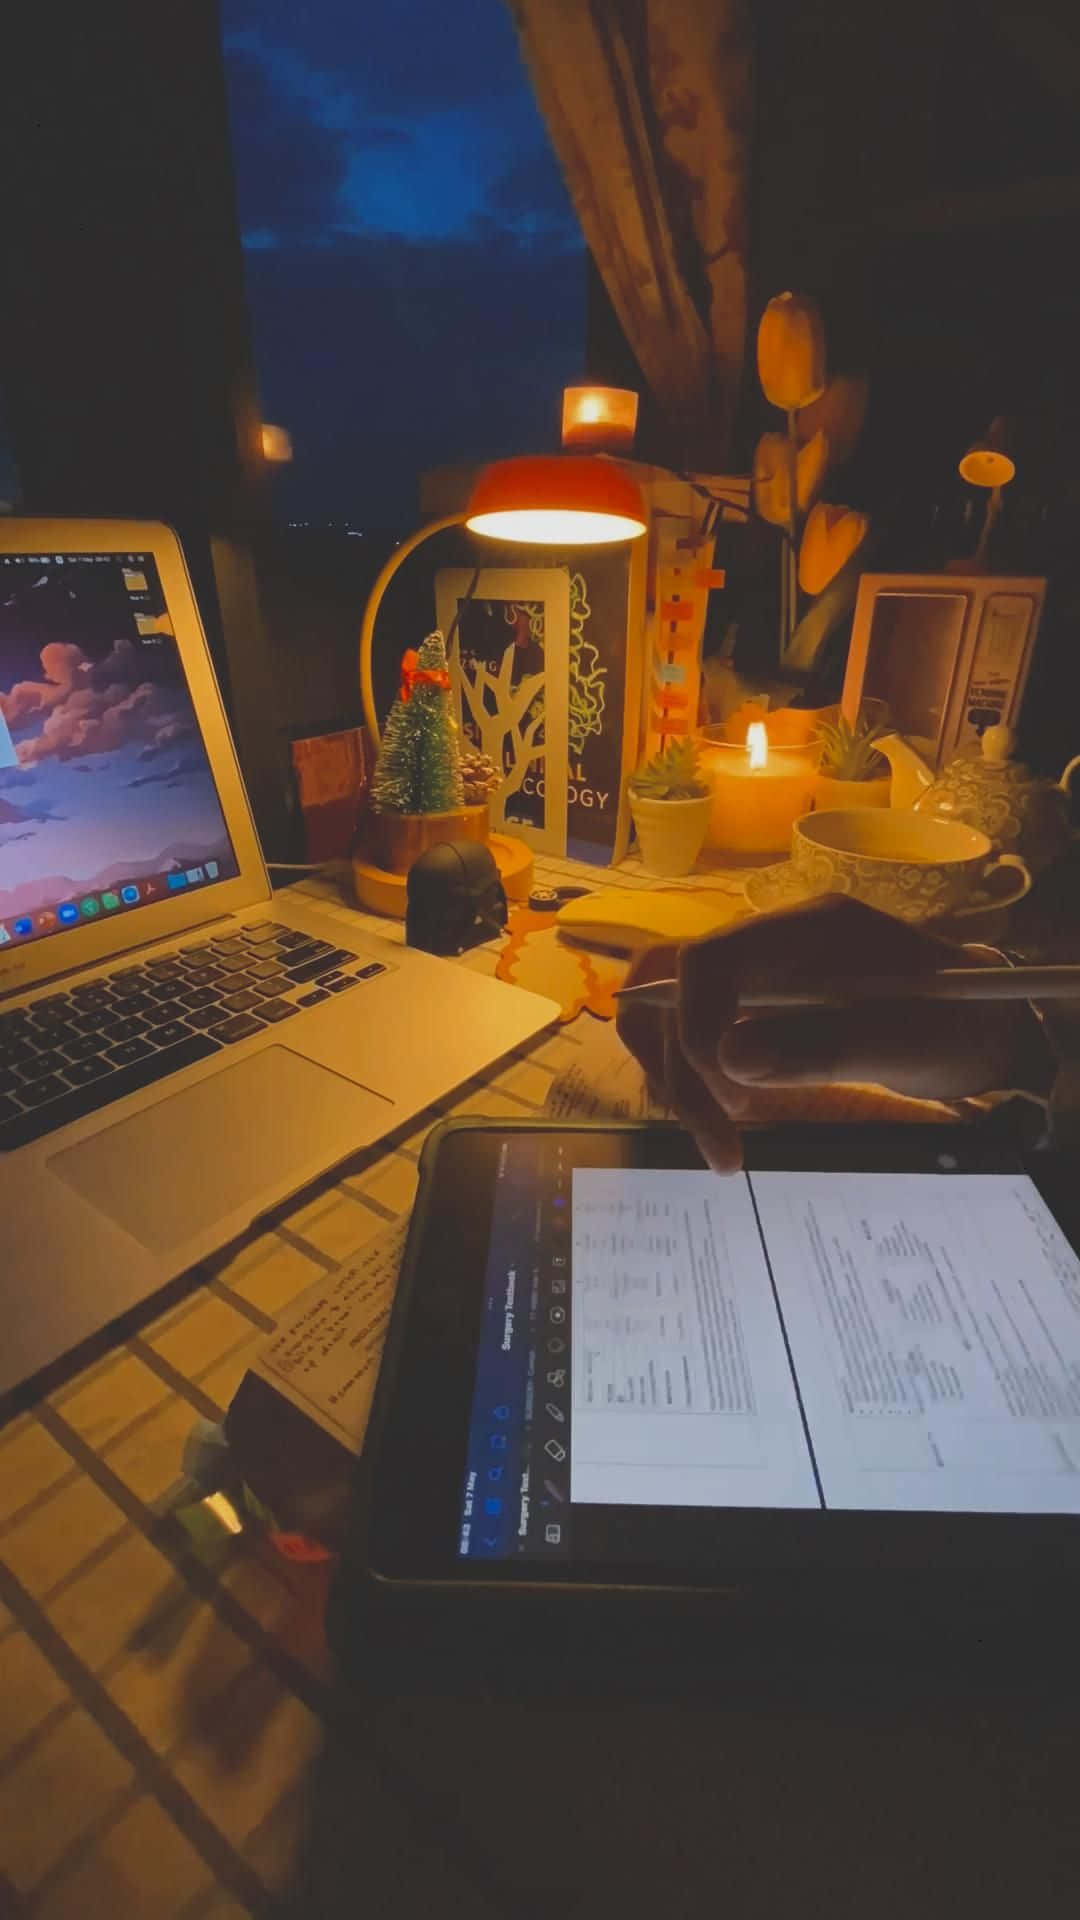 Unalaptop, Una Tablet Y Un Teléfono En Un Escritorio Por La Noche.